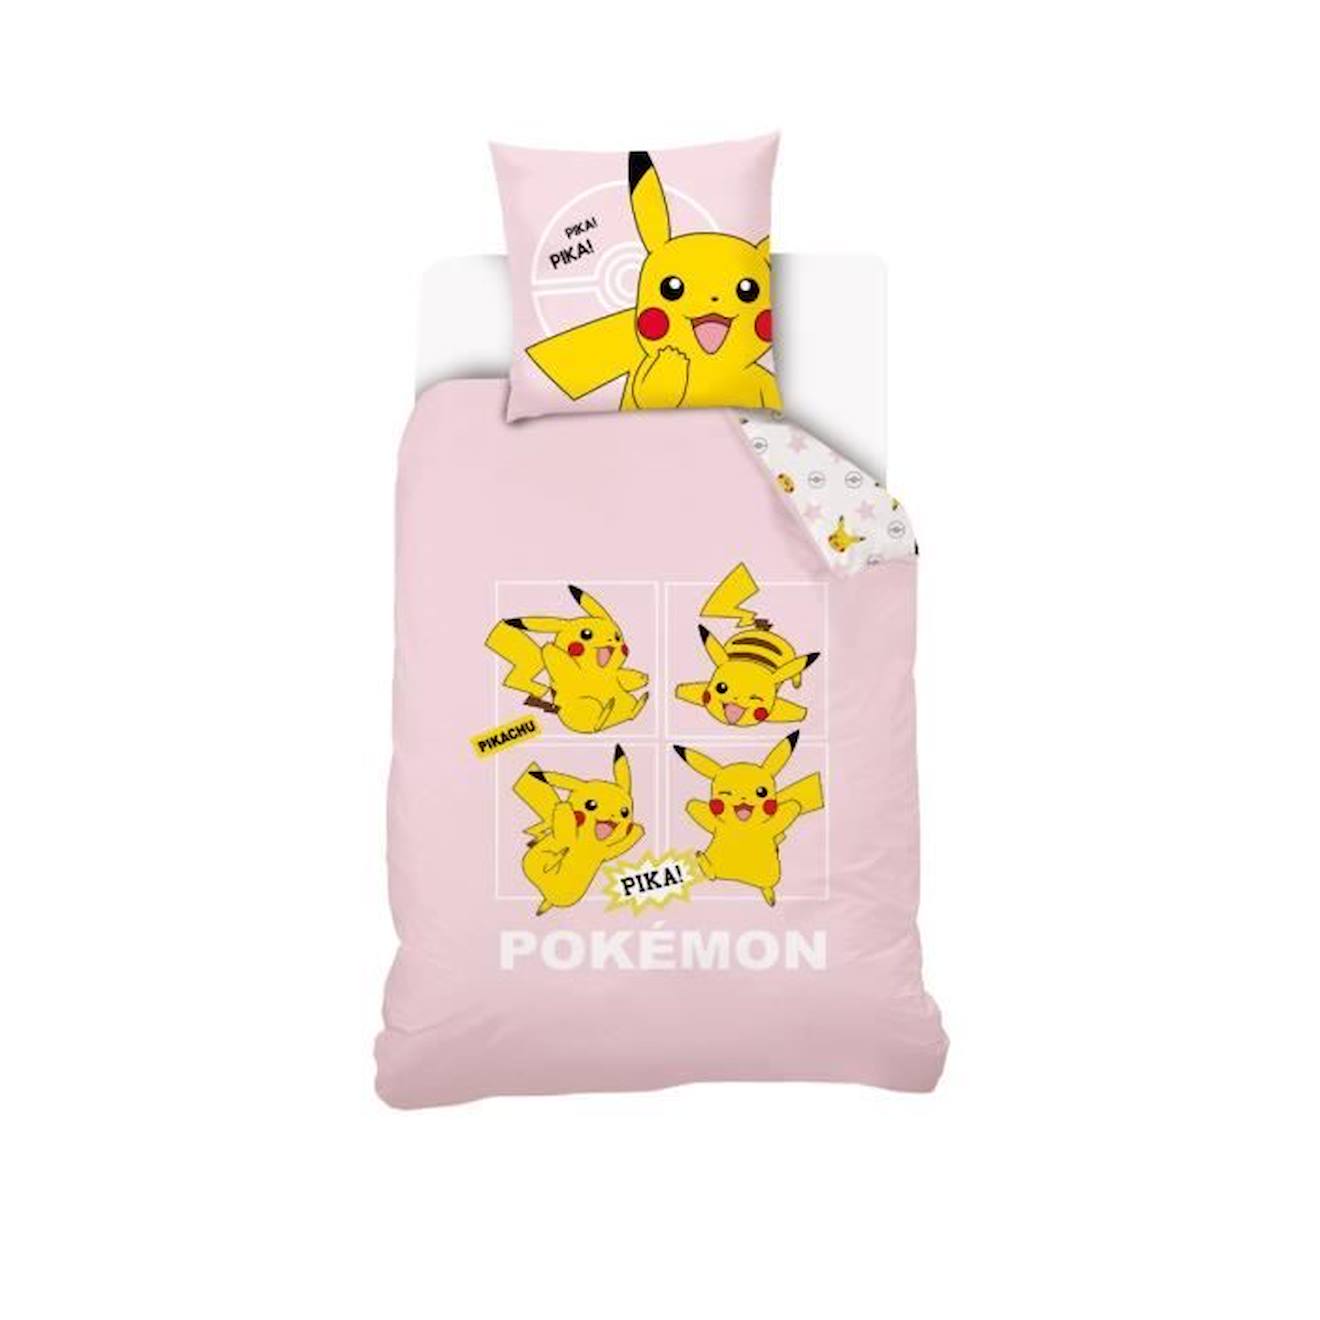 Housse De Couette Pikachu Pokémon 140x200 Cm + 1 Taie D'oreiller 63x63 Cm - 100% Coton - Rose Pale R